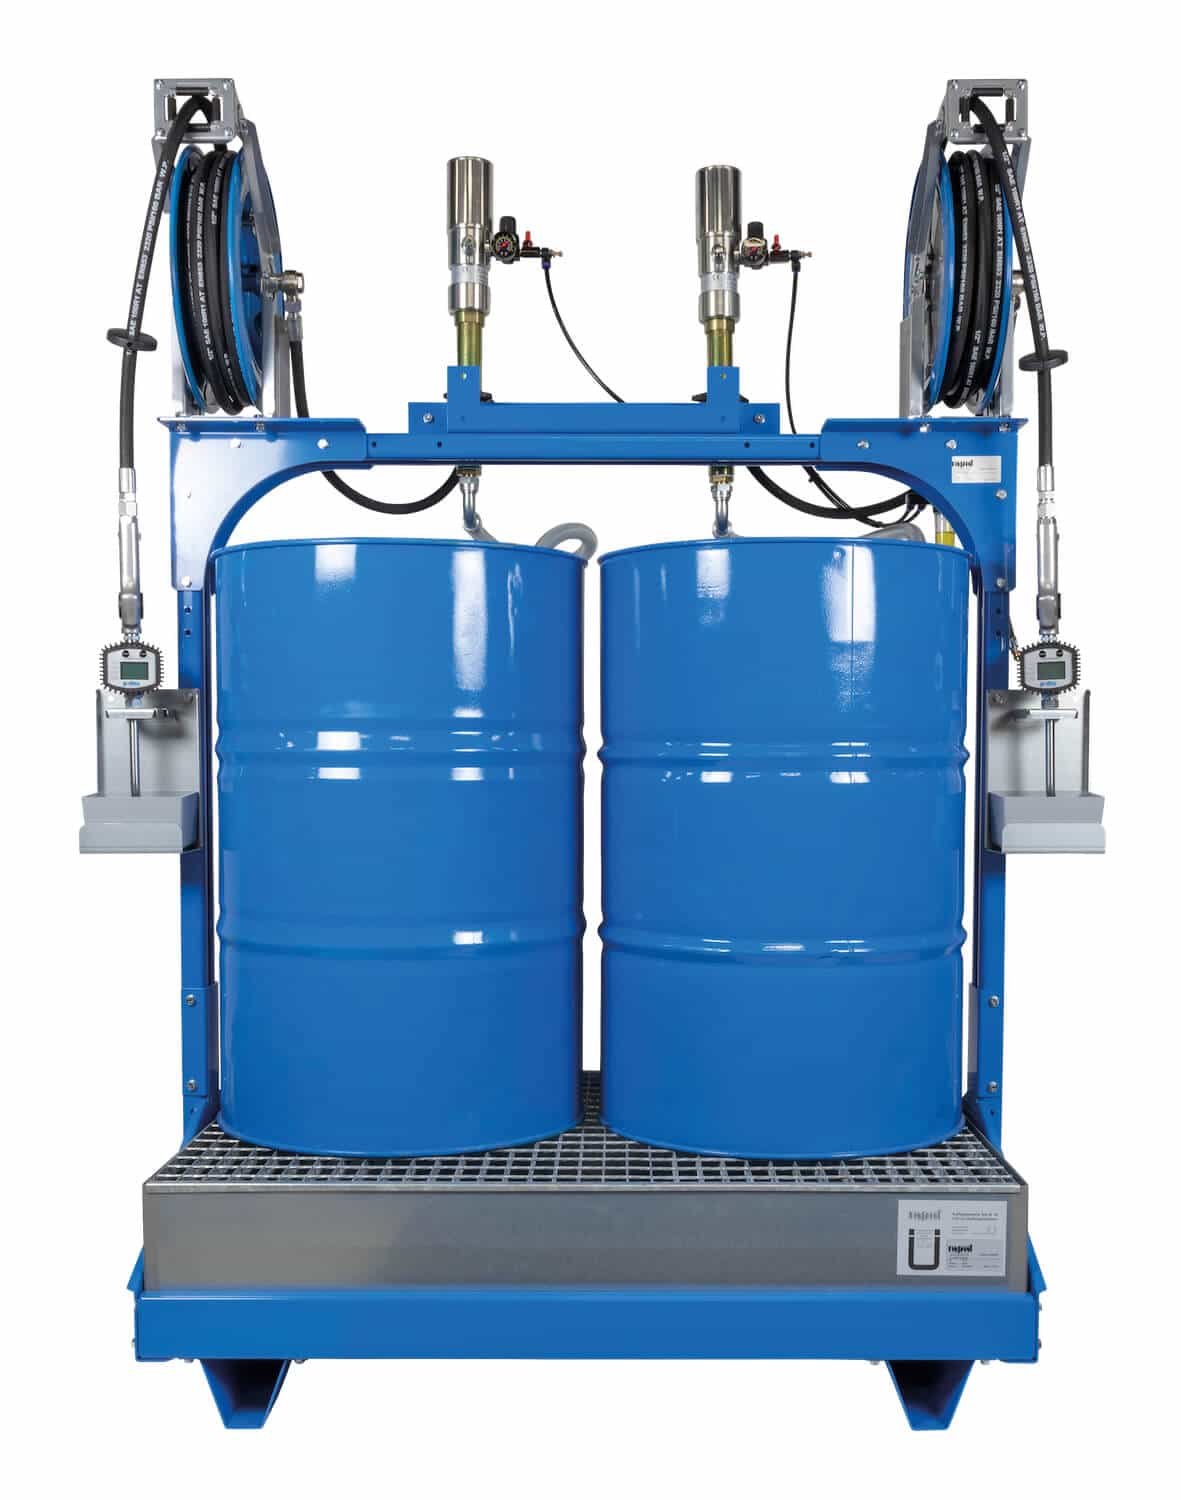 Universell einsetzbares Ölabgabeset für 2x 200 Ltr.-Fässer, mit pneumatischen Pumpen und automatischen Schlauchaufrollern, eichfähig / MID-konform